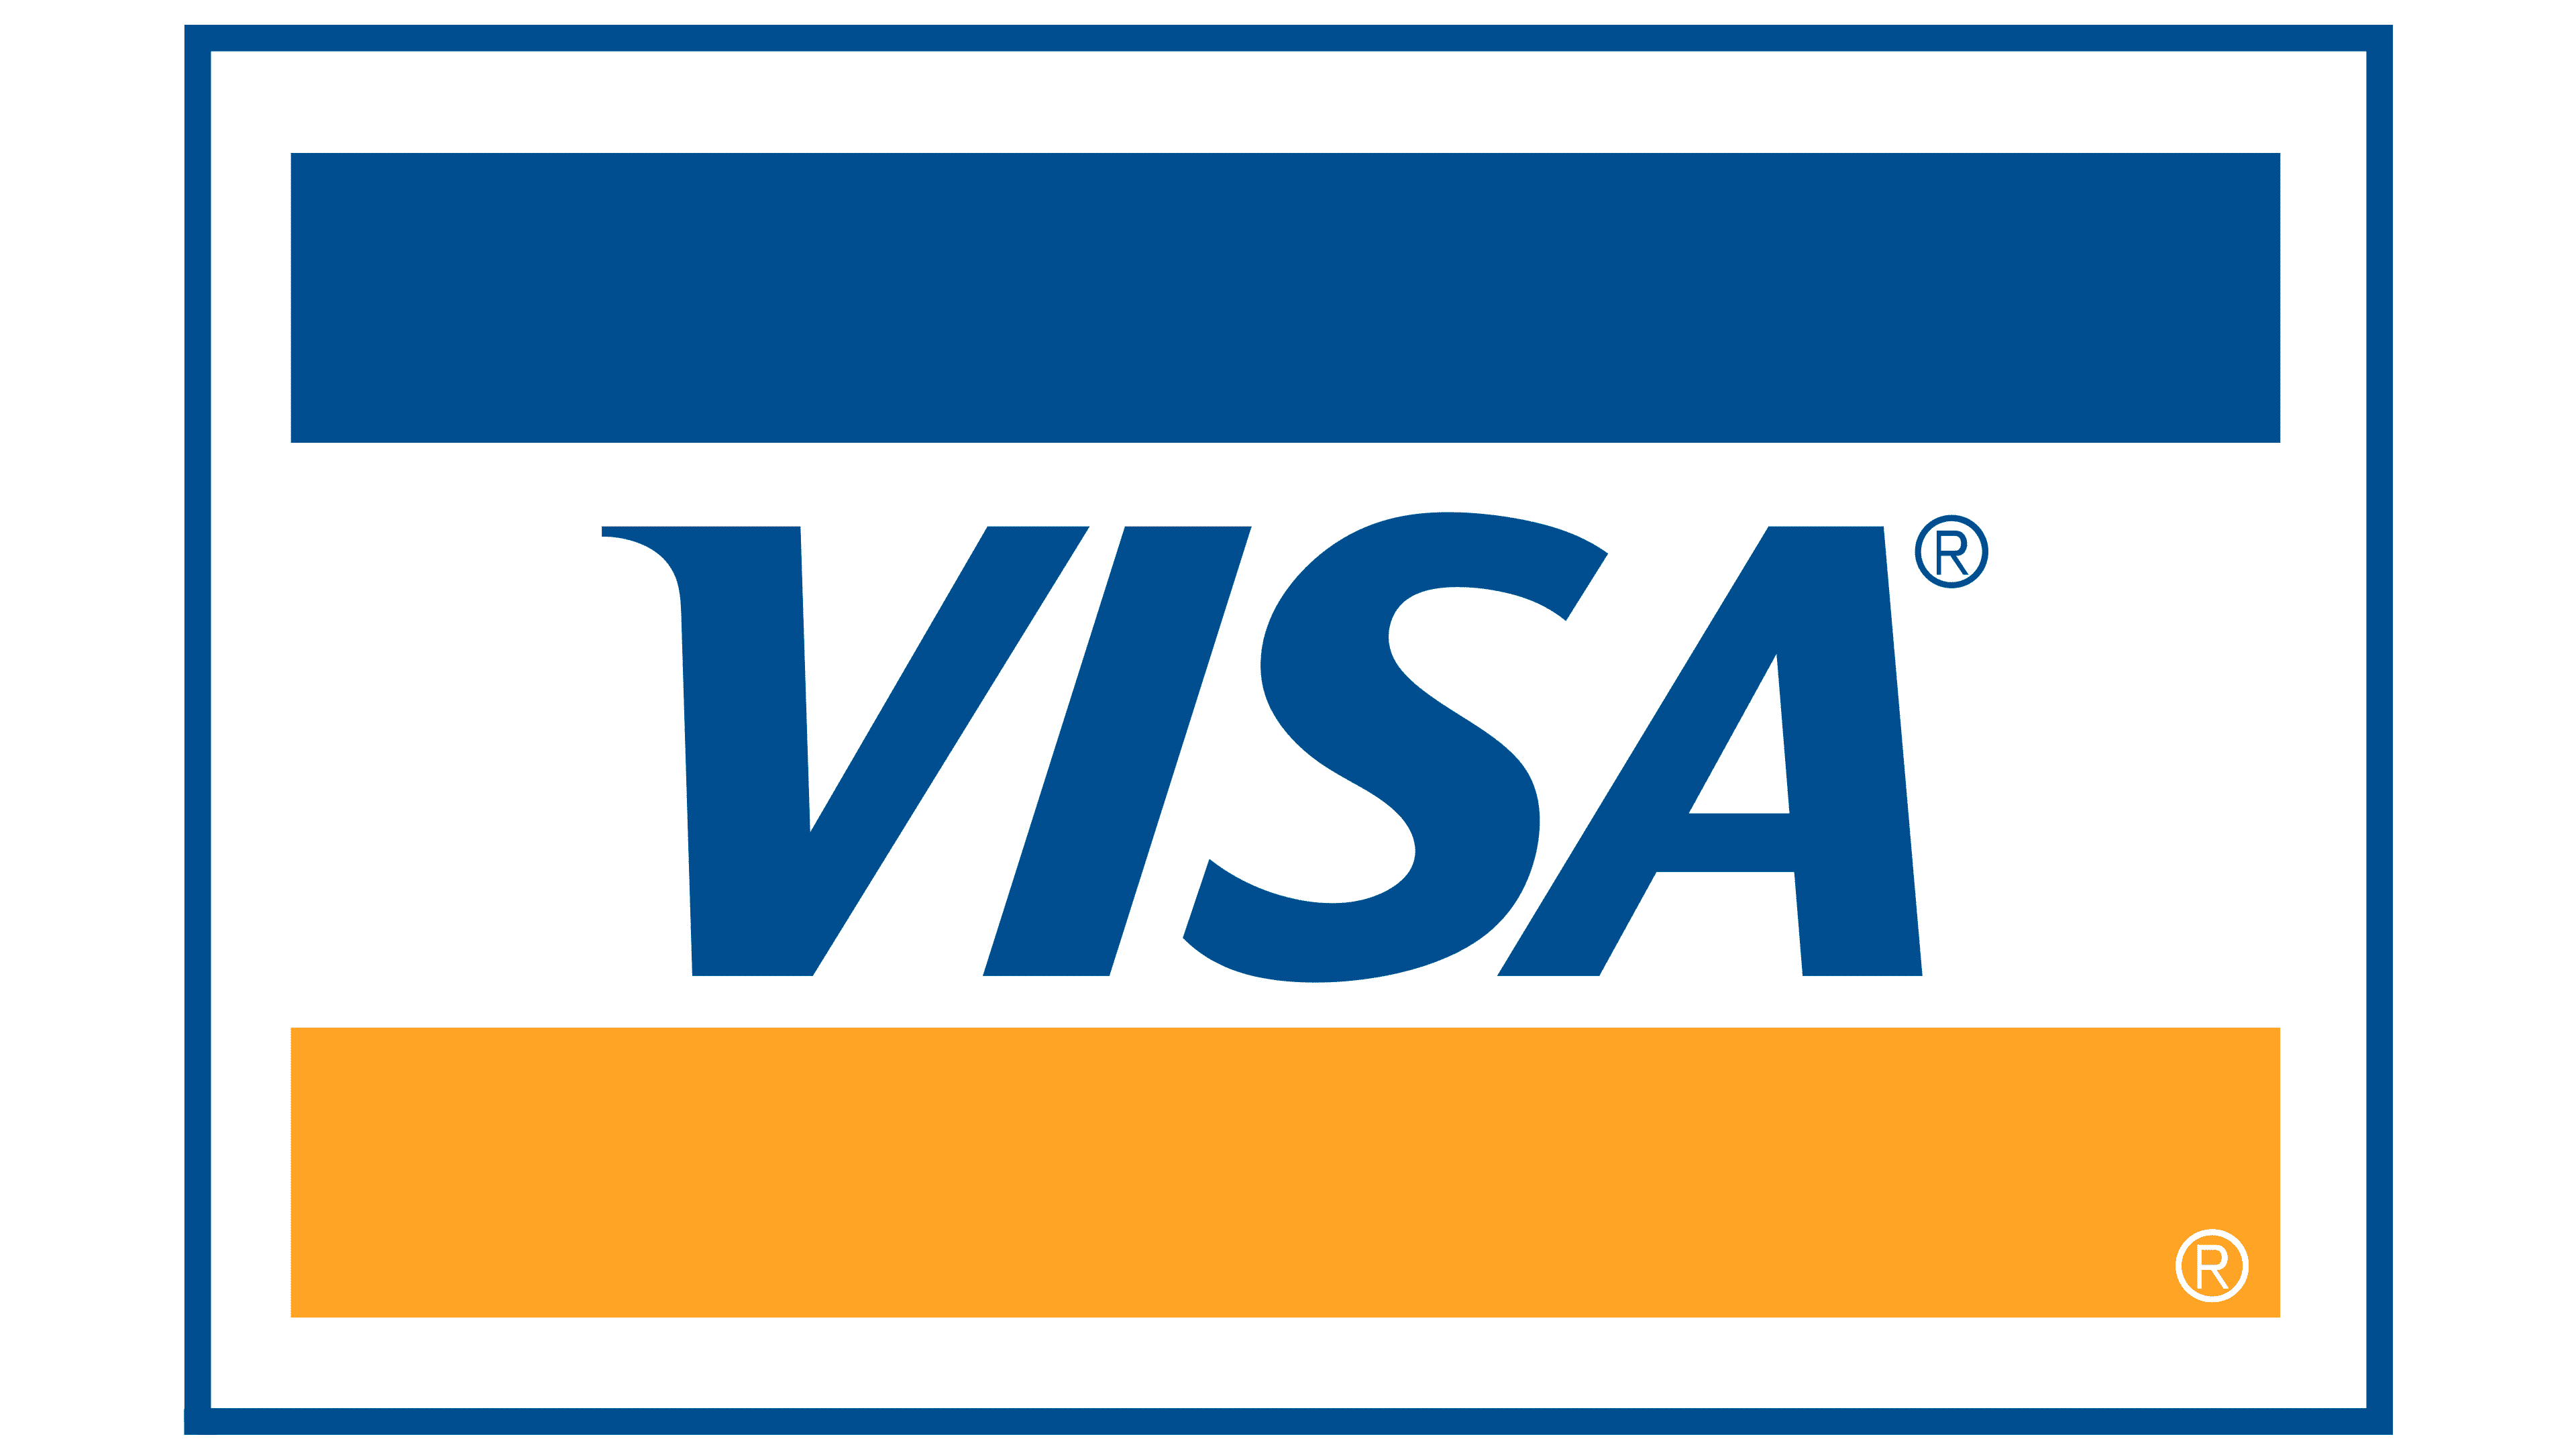 Visa card logo